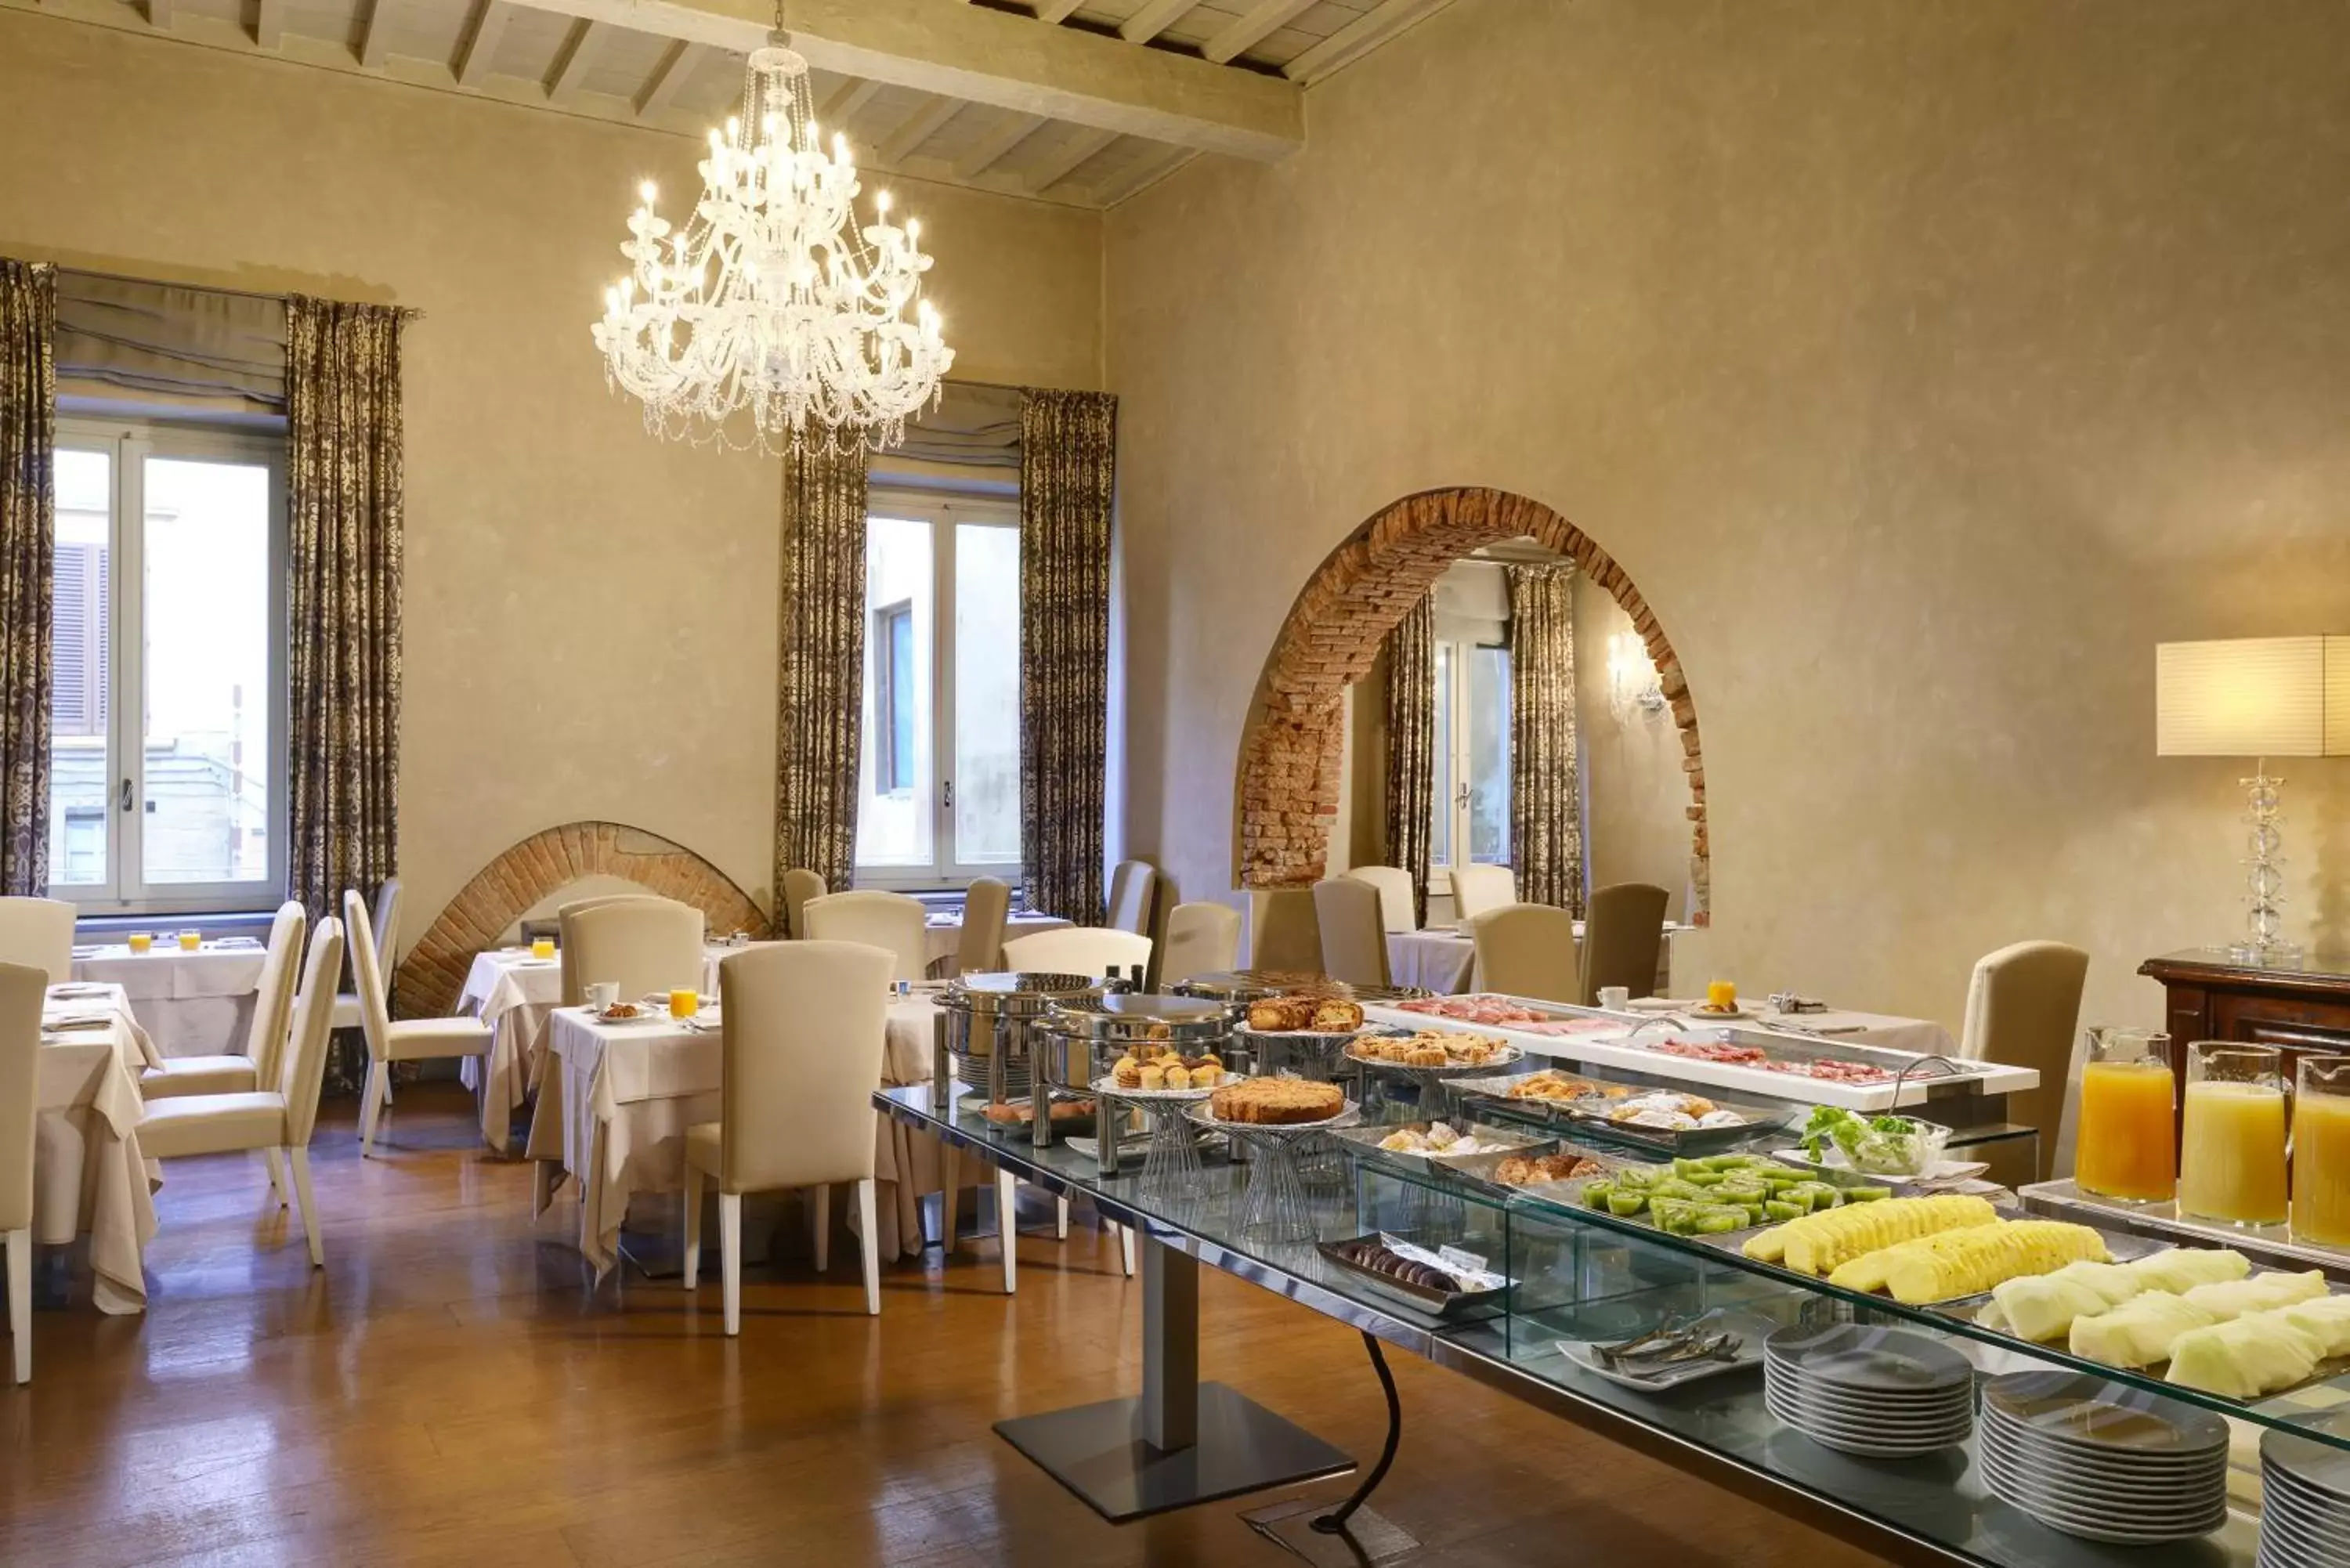 Buffet breakfast in Brunelleschi Hotel